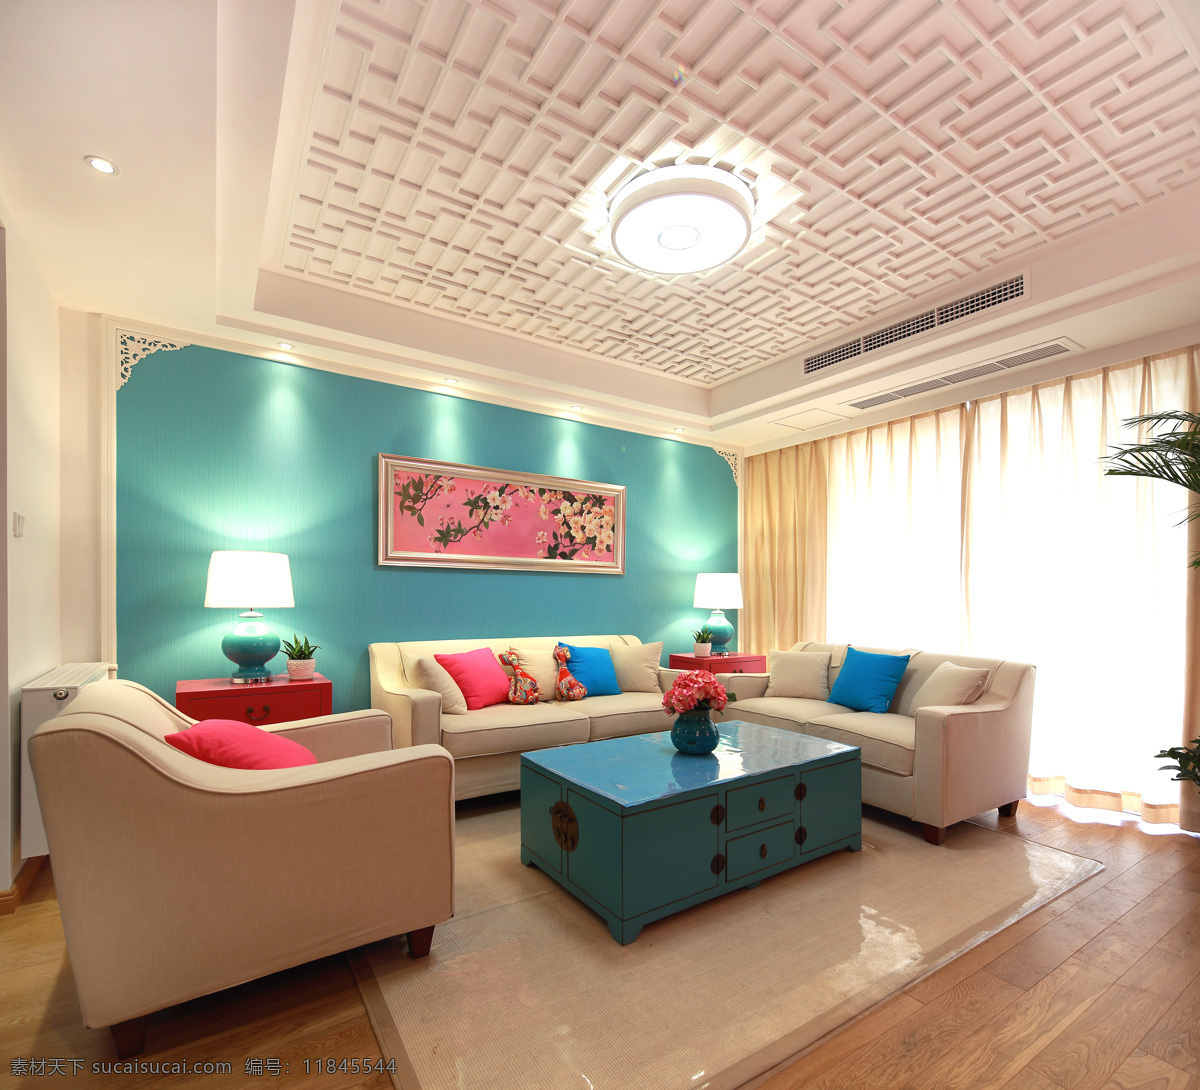 美式 创意 室内设计 家装 效果图 室内 家装效果图 沙发 抱枕 台灯 青蓝色 背景墙 鲜花 挂画